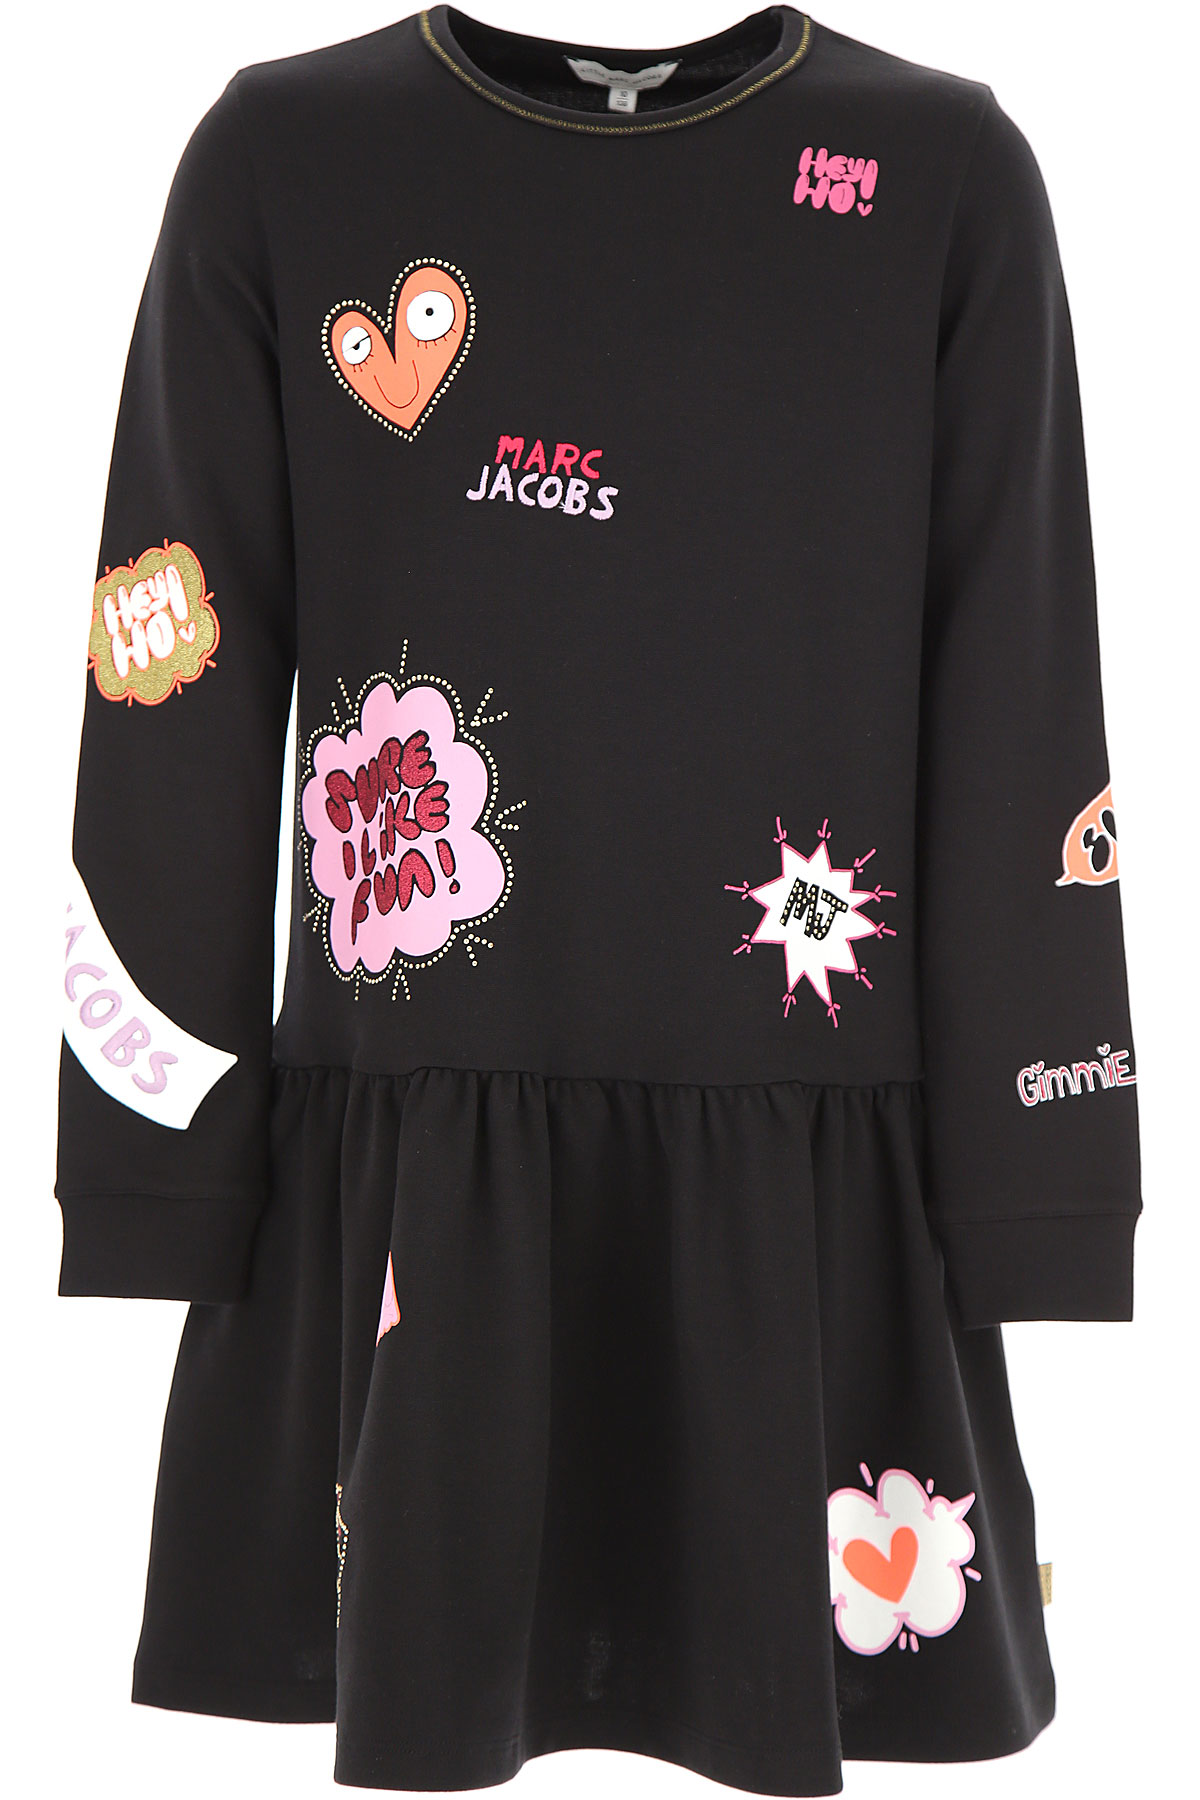 Marc Jacobs Kleid für Mädchen Günstig im Sale, Schwarz, Baumwolle, 2017, 10Y 12Y 14Y